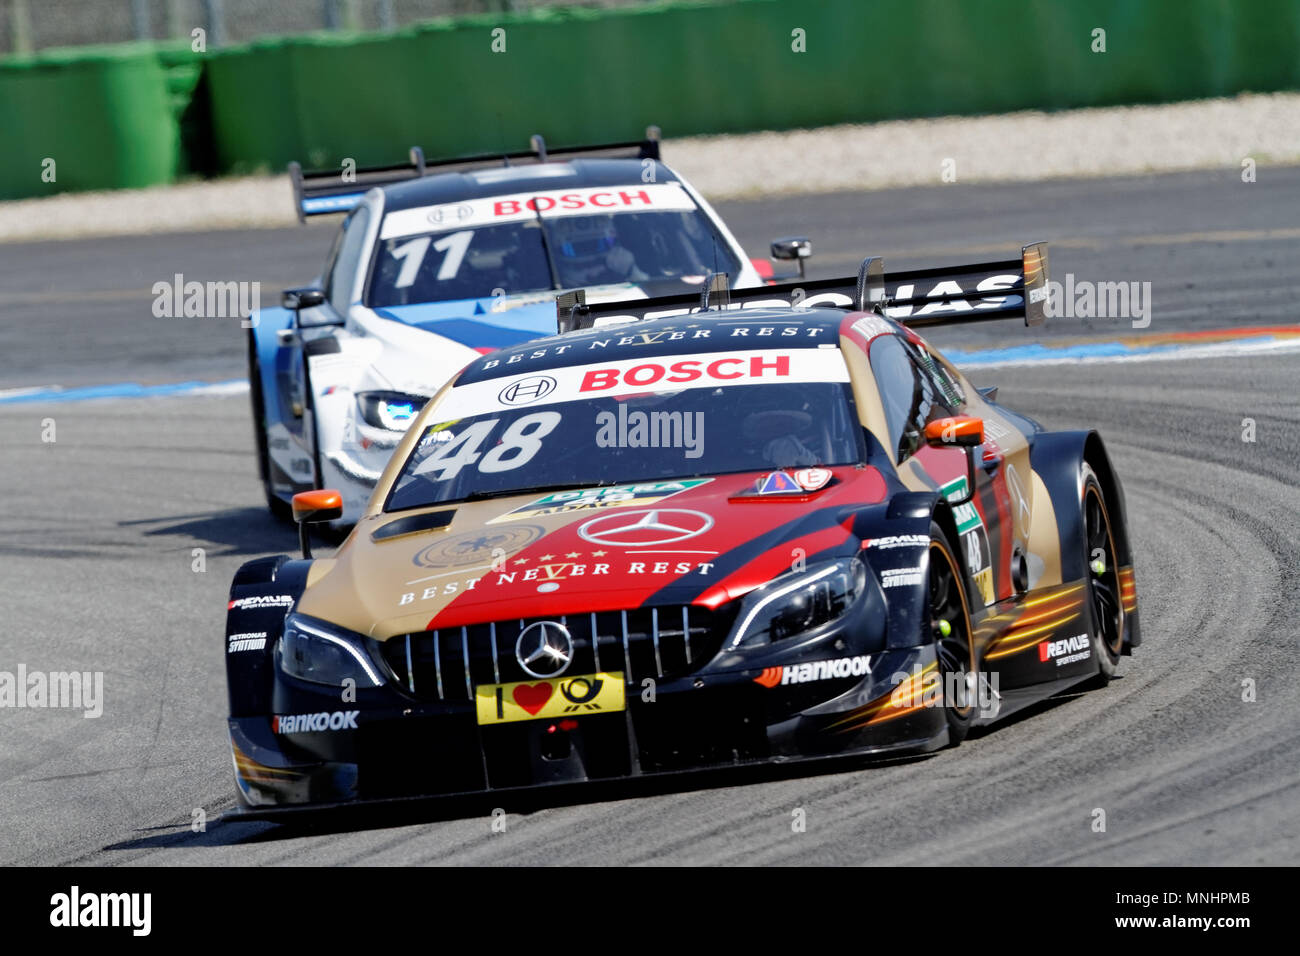 Edoardo Mortara, ITA, Mercedes, DTM 2018, Rennen 1, Hockenheim Stock Photo